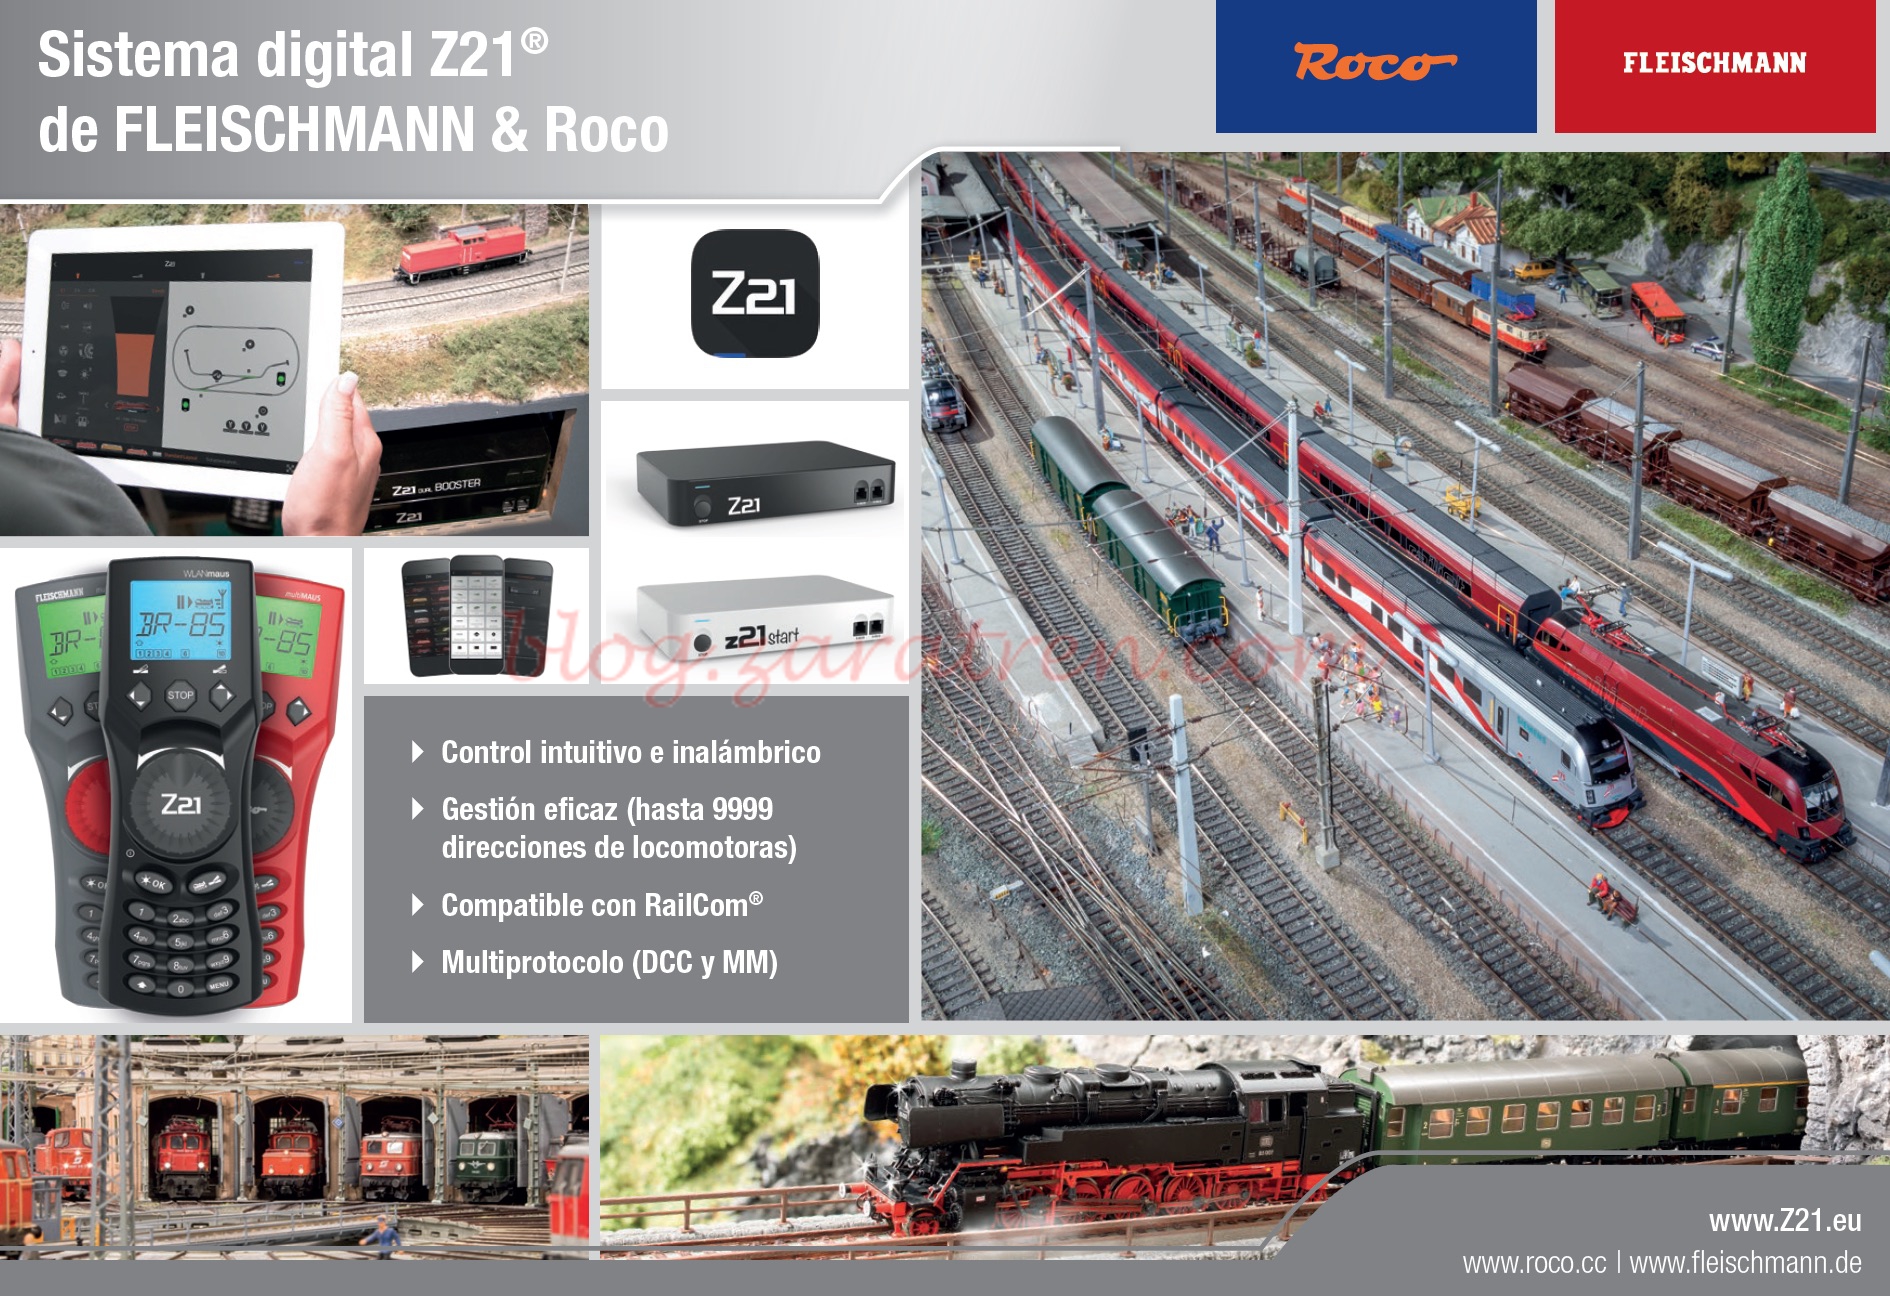 Roco / Fleischmann – Nuevos folletos publicitarios del sistema Z21 en castellano.